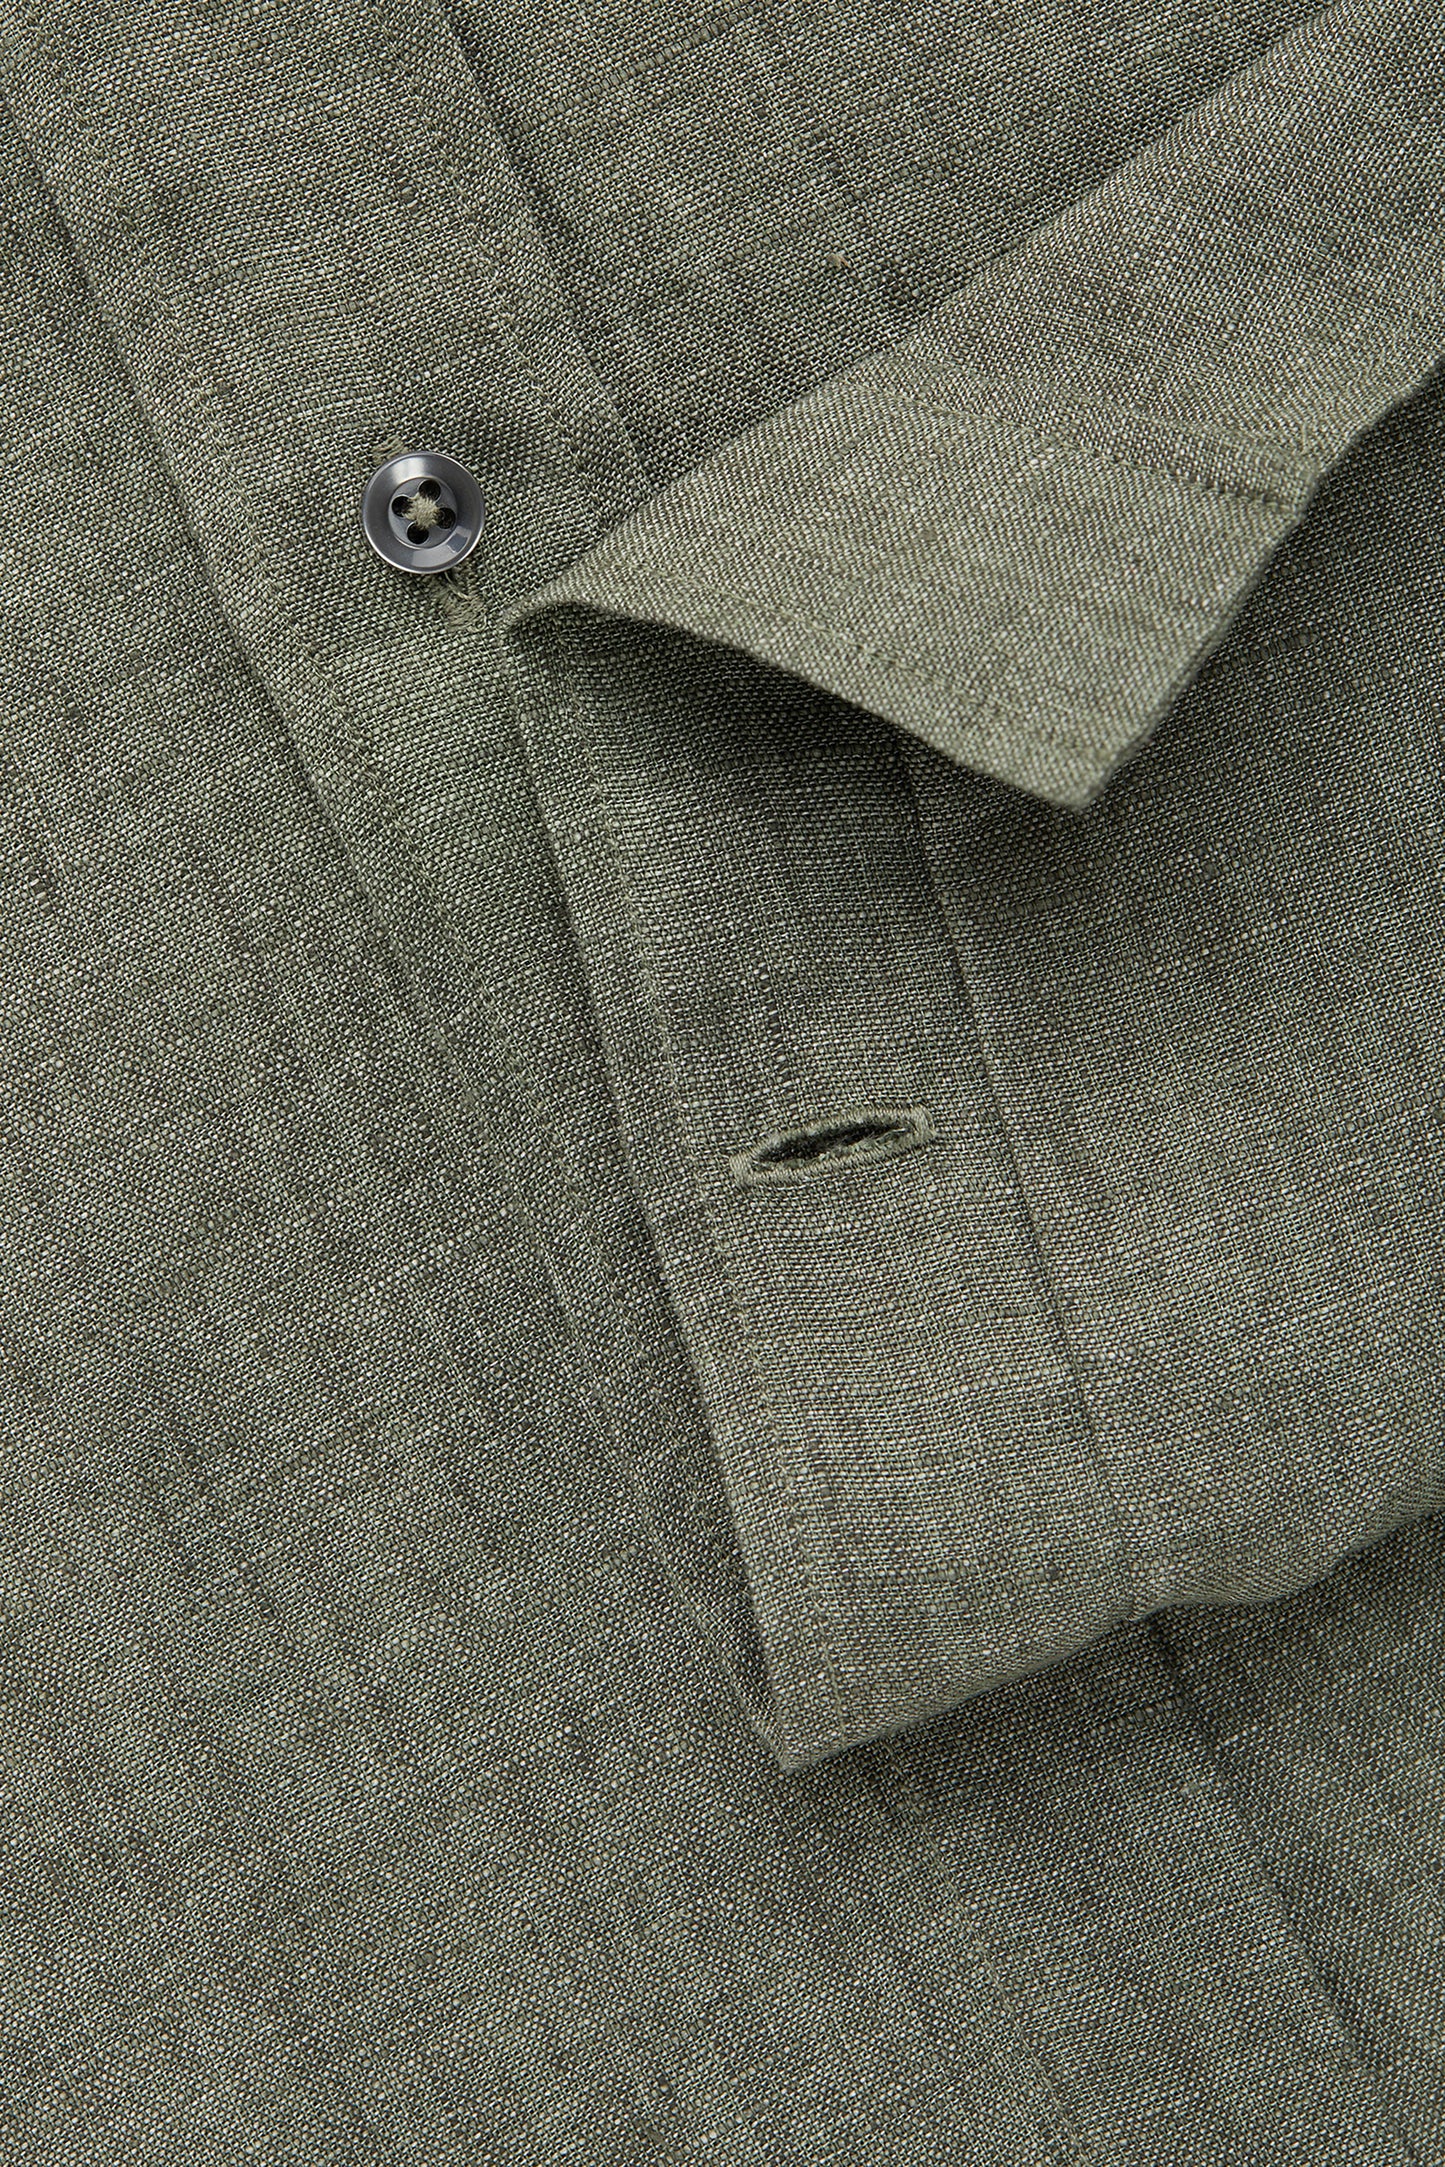 Linen Short Sleeve Regular Button Up Charcoal Gray